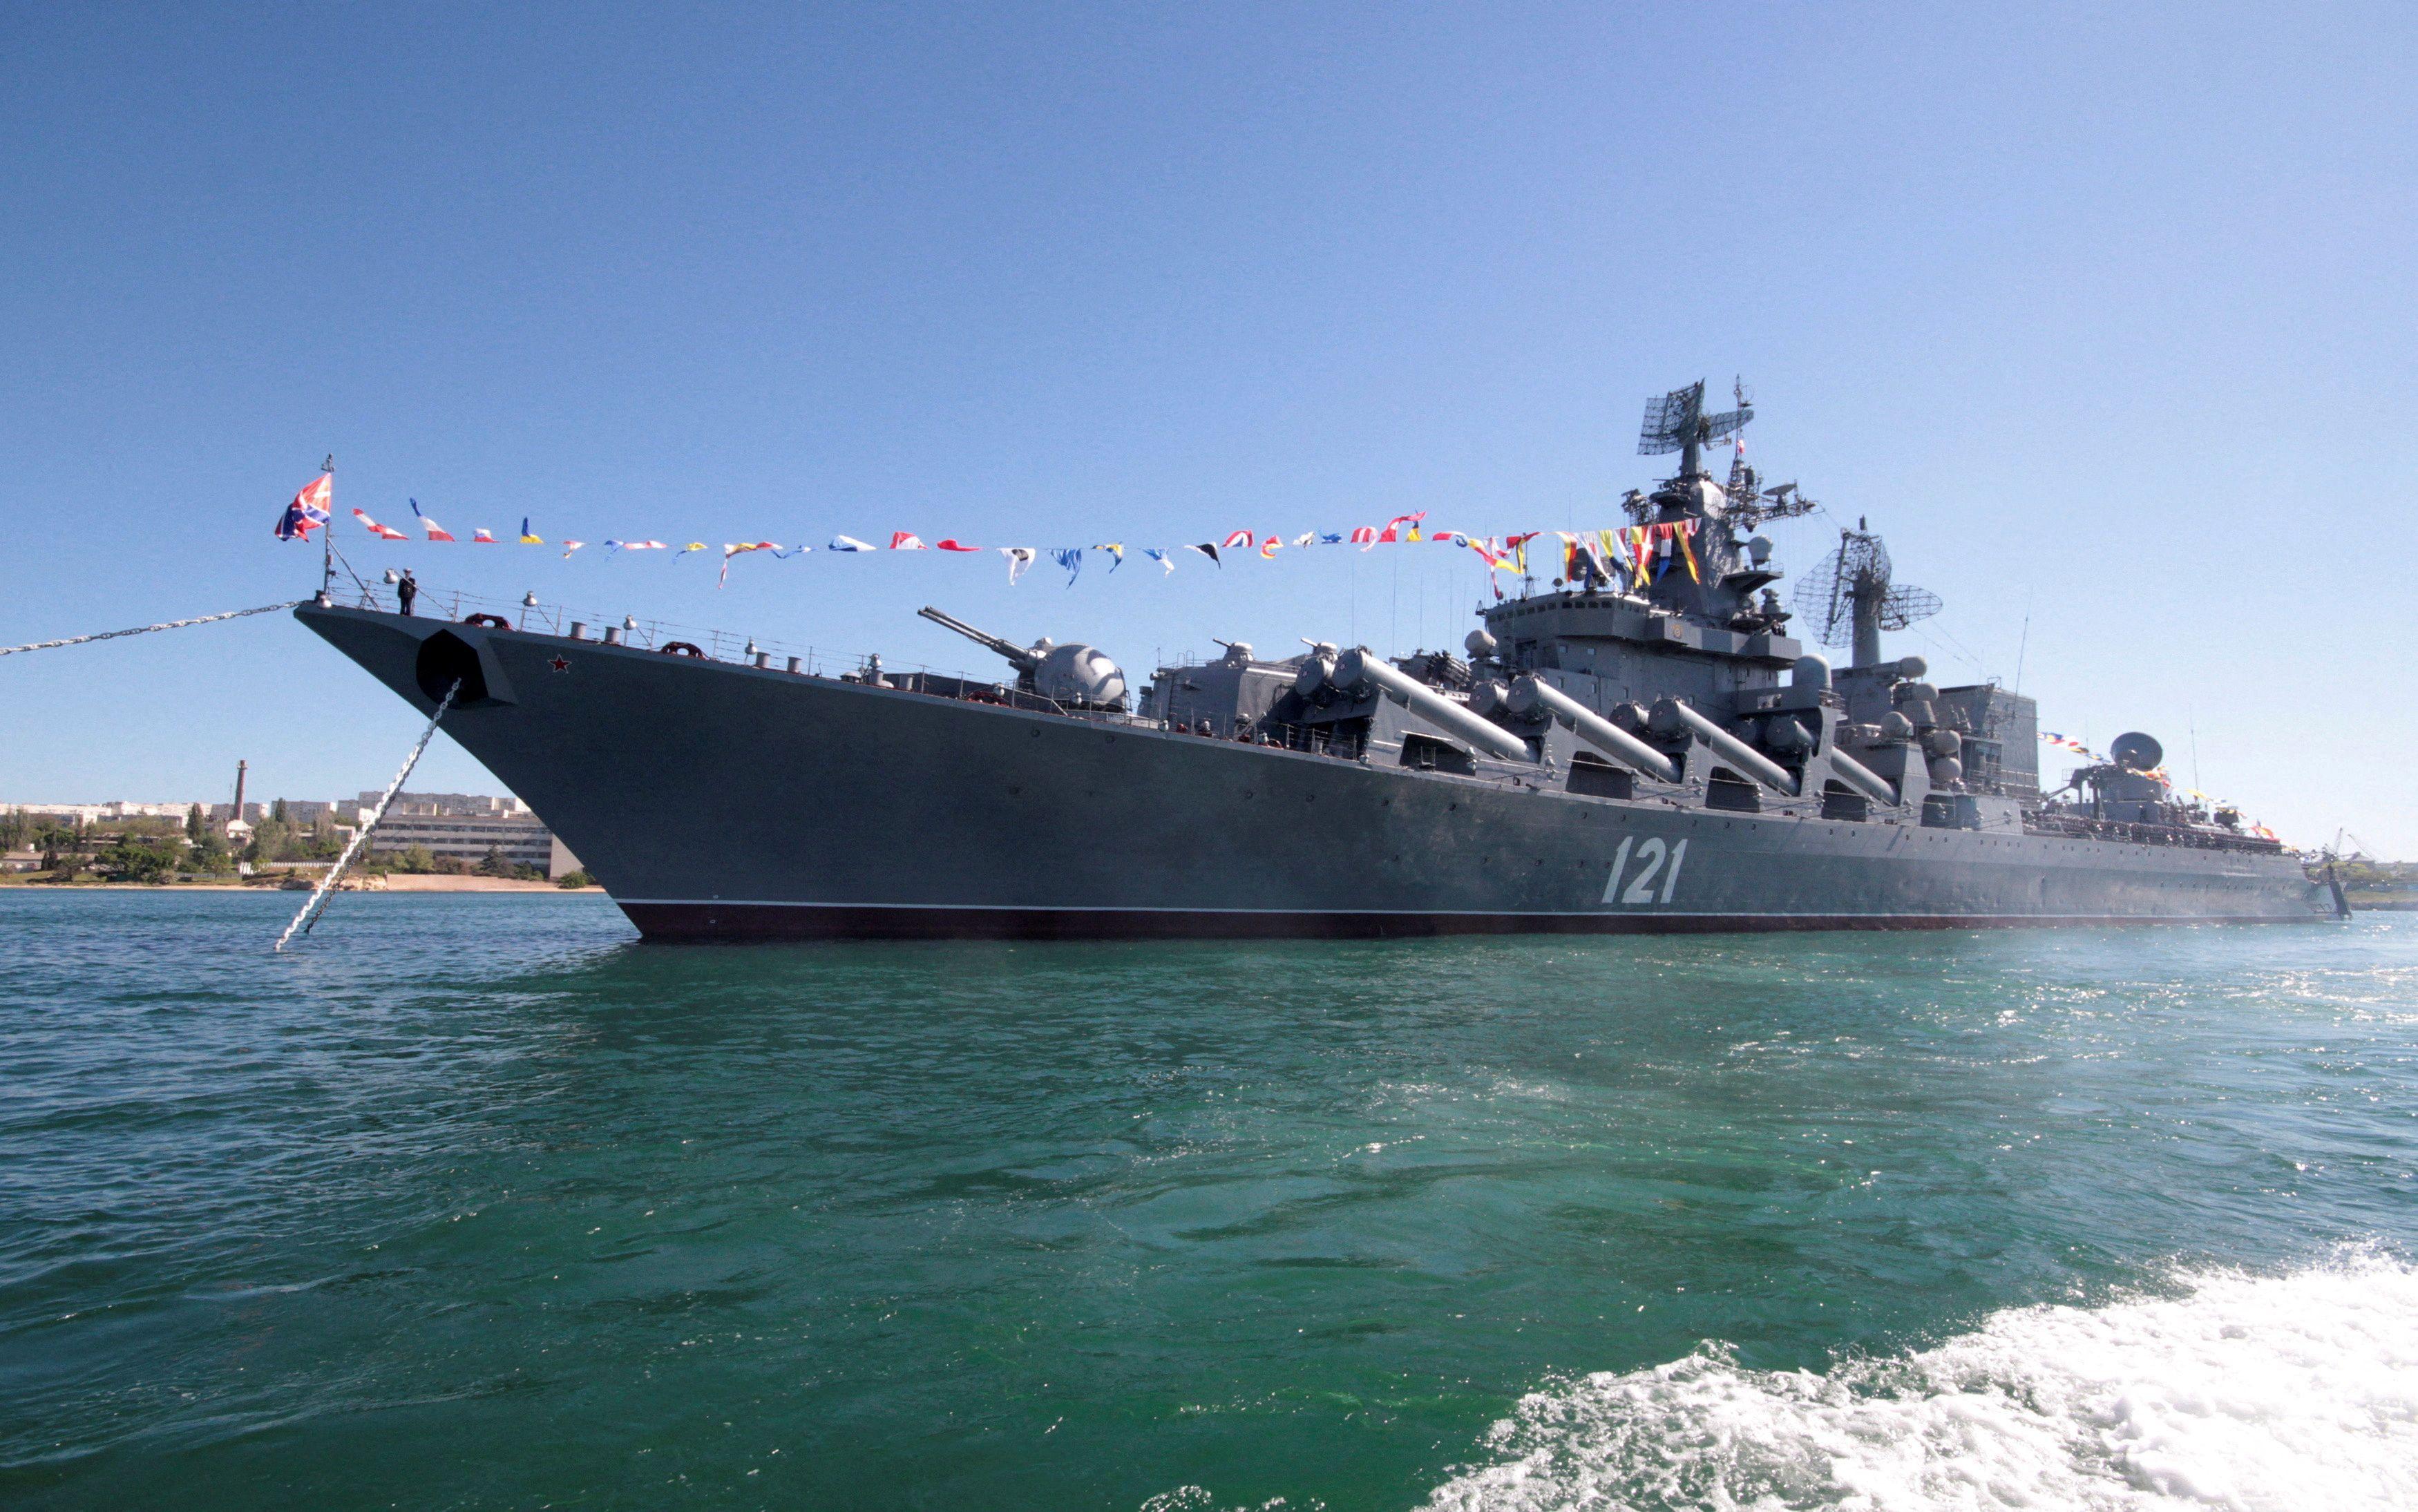 Há navios de guerra russos no canal da Mancha? - Quora